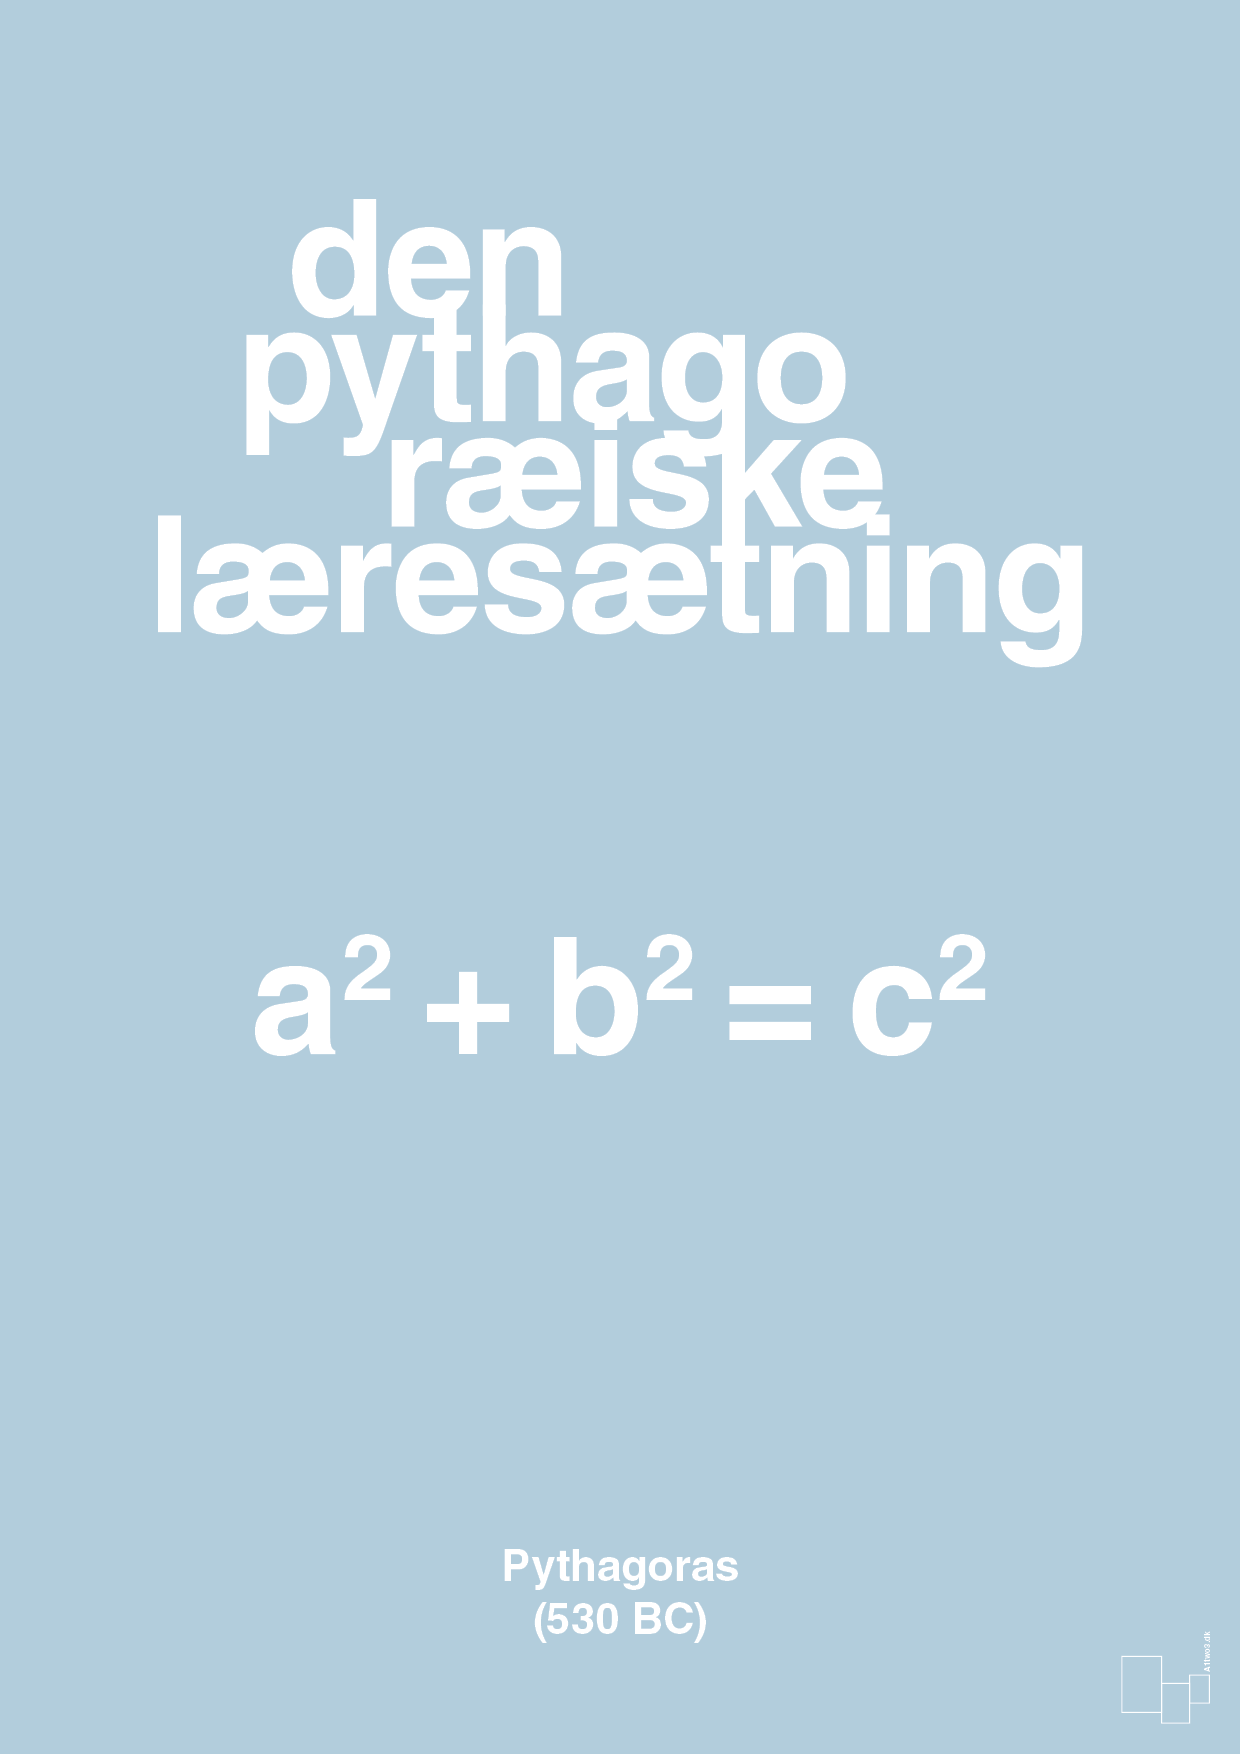 den pythagoræiske læresætning - Plakat med Videnskab i Heavenly Blue